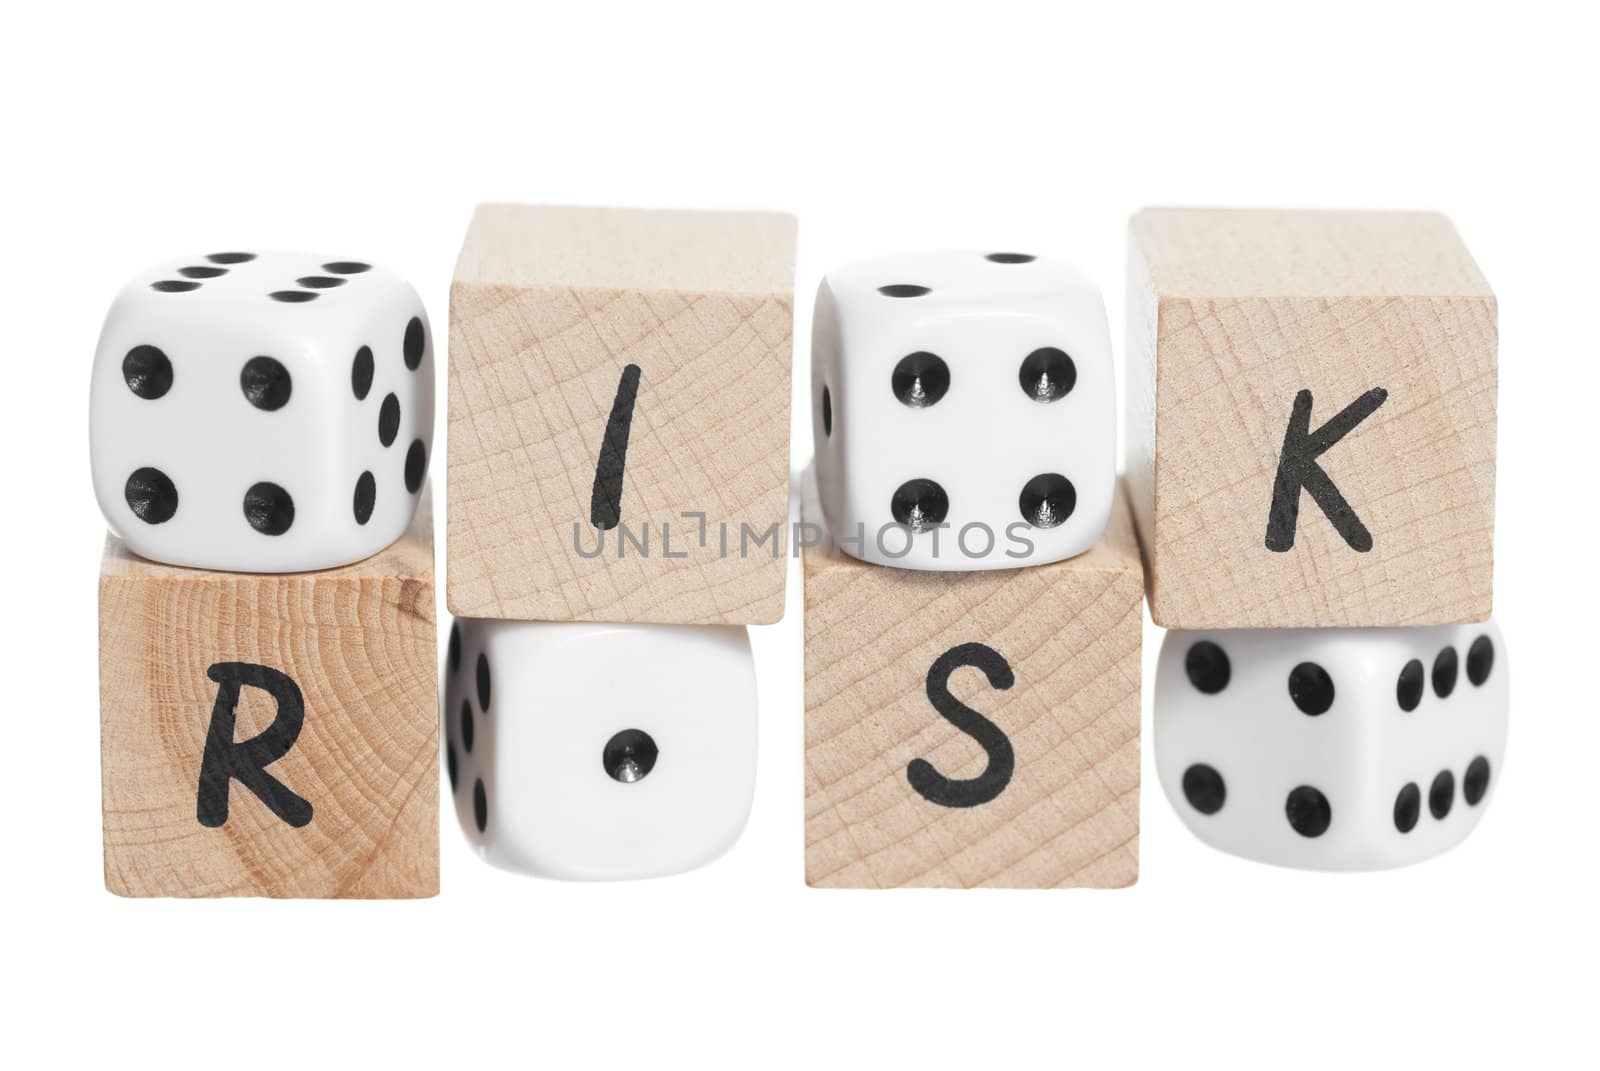 Risk spelt with wooden blocks. White background.